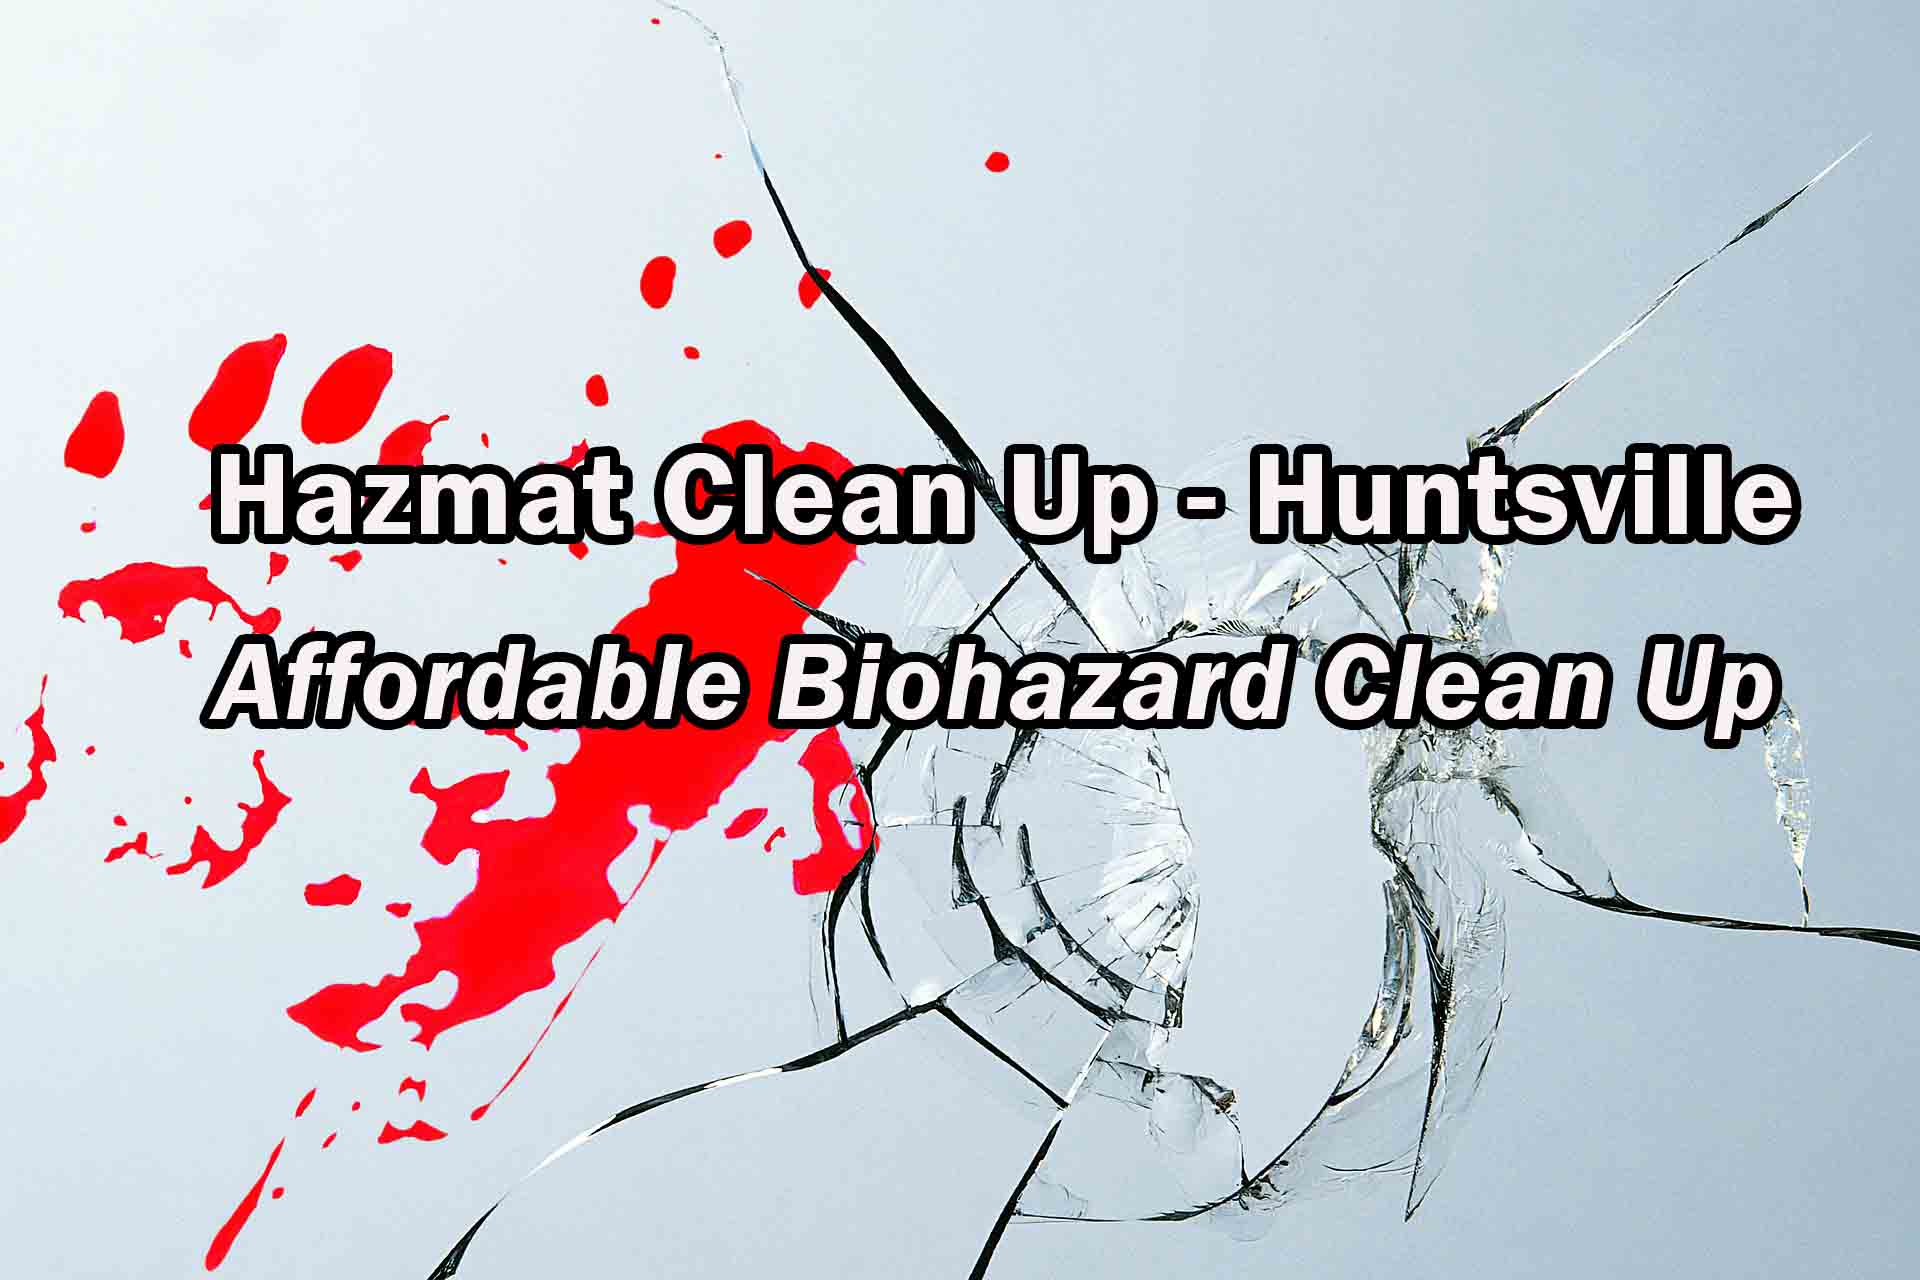 Hazmat Clean Up - Huntsville - Biohazard Clean Up